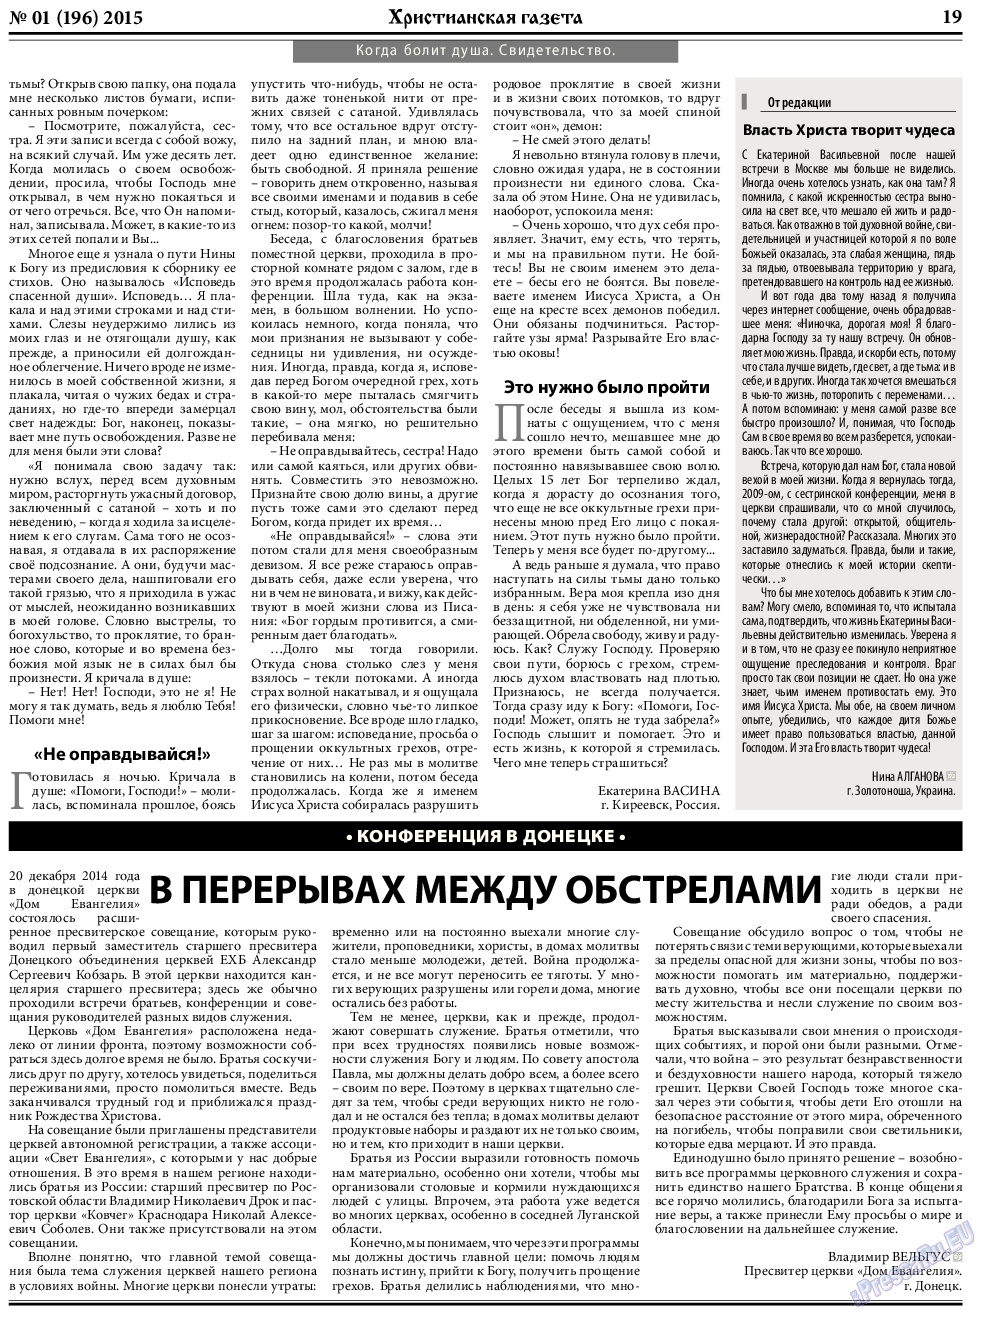 Христианская газета, газета. 2015 №1 стр.27